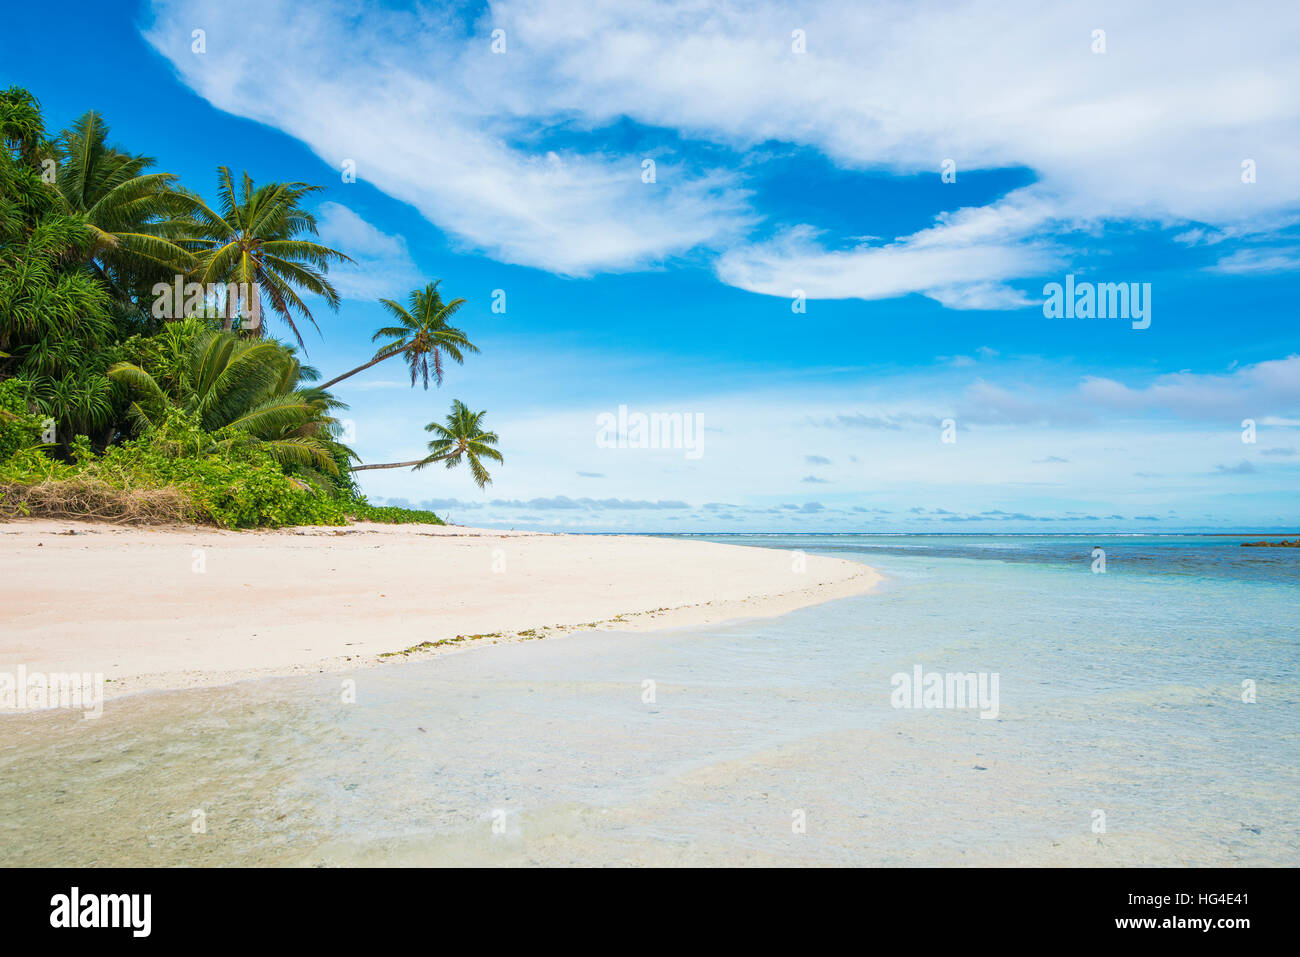 Plage de sable blanc et eau turquoise, Marine National Park, Tuvalu, le Pacifique Sud Banque D'Images